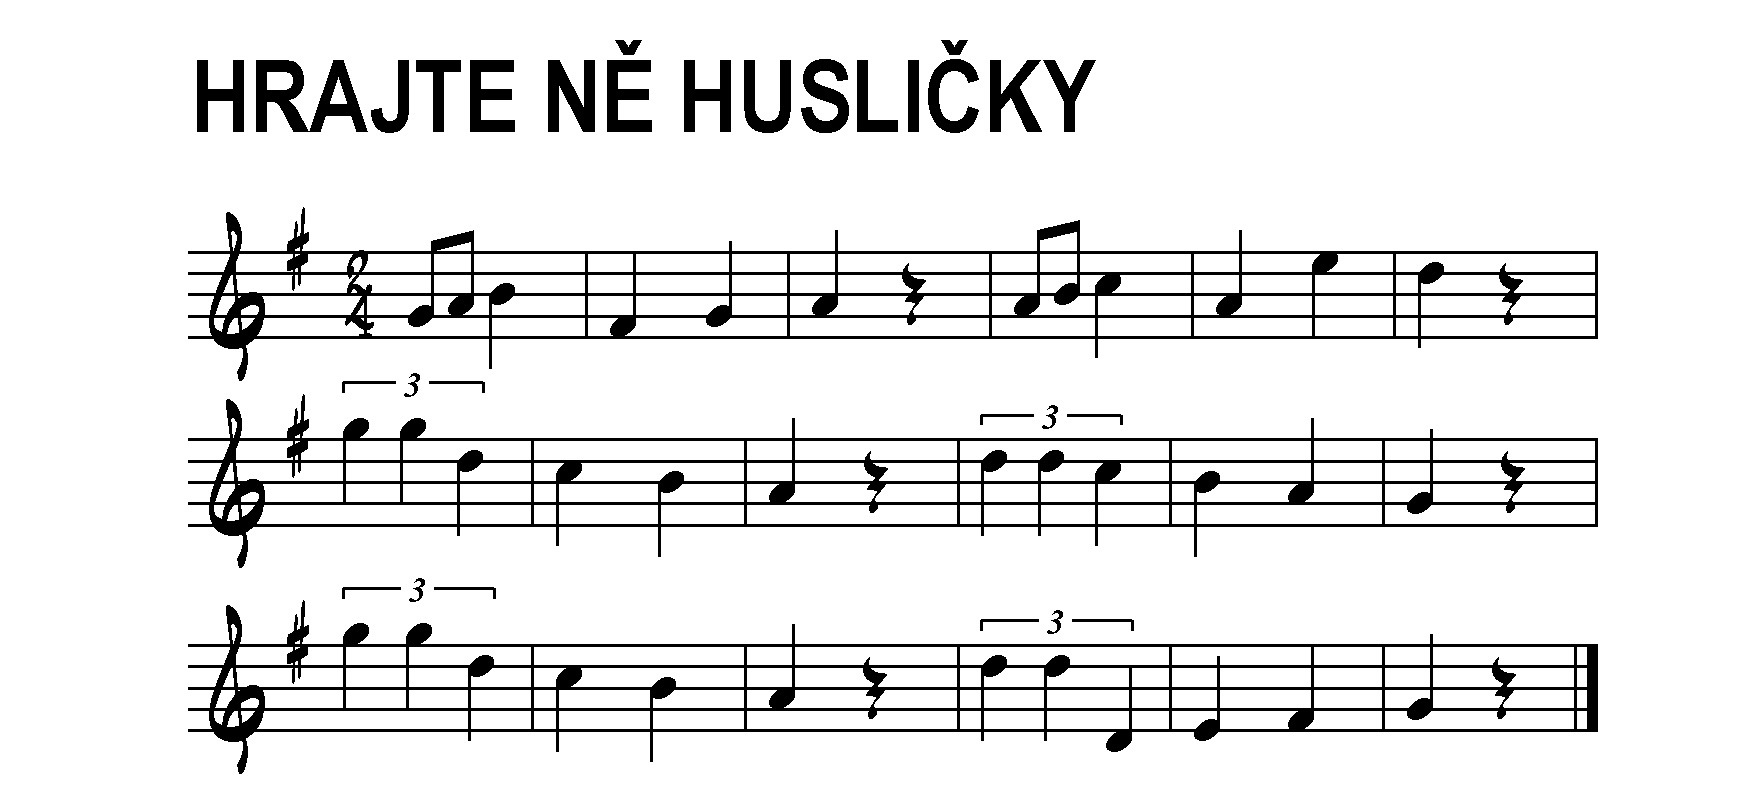 ☼ Hrajte ně husličky (Zdeněk Stašek a Nivnička, 2008)